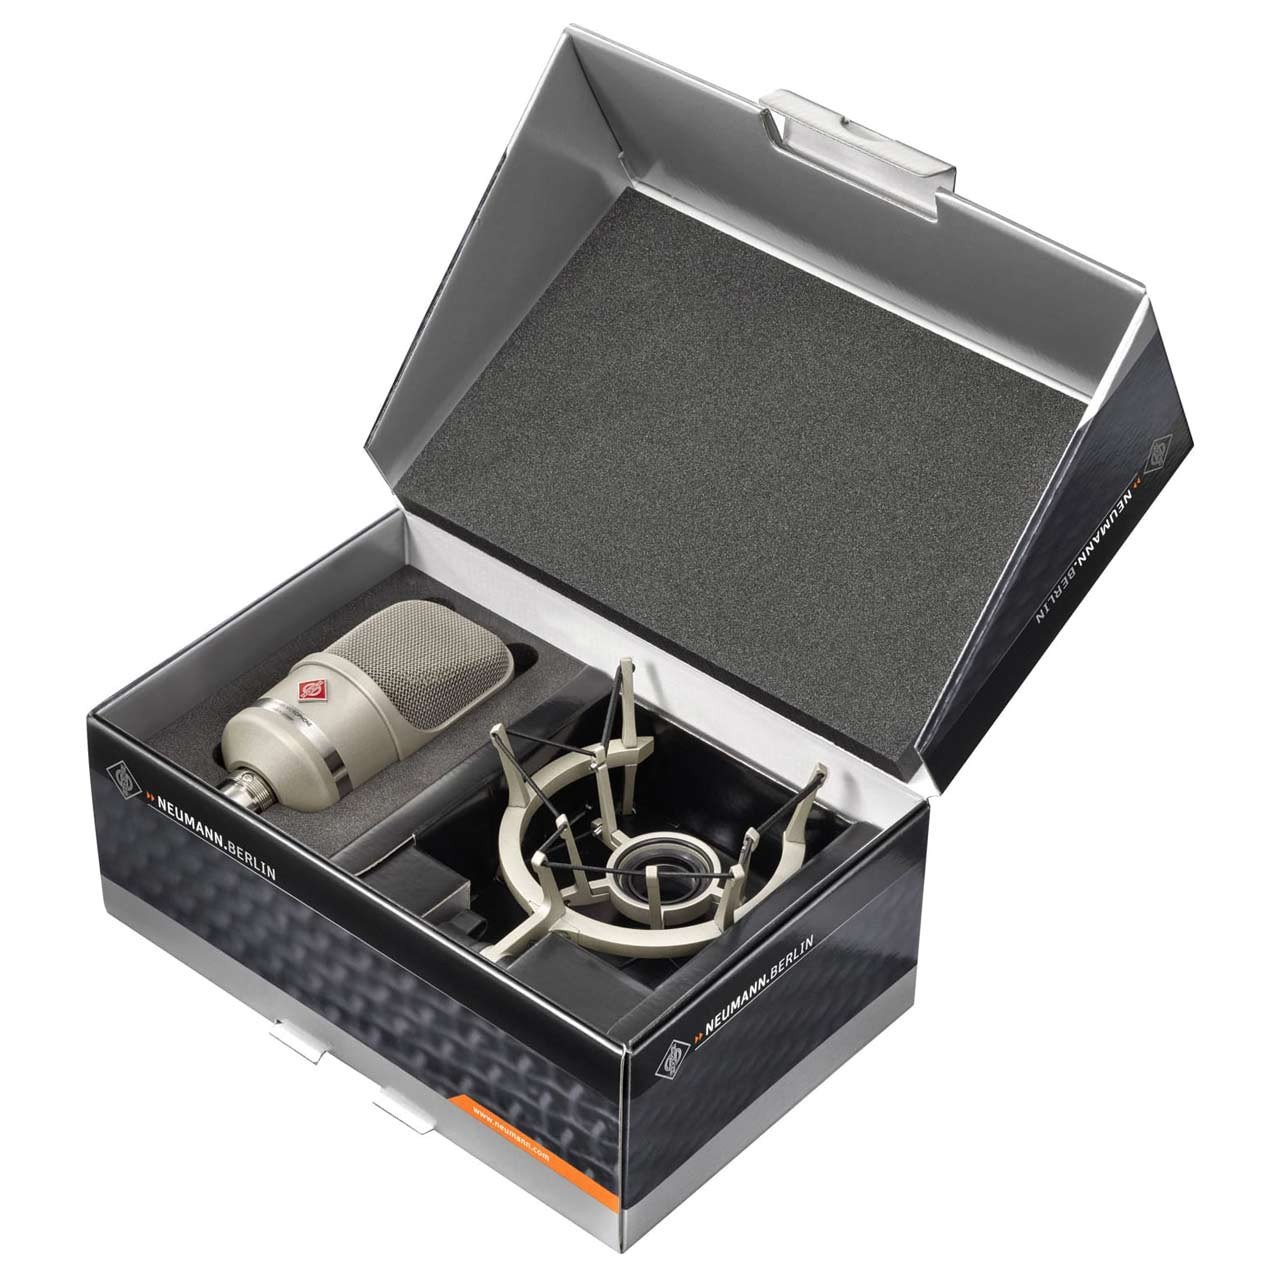 Condenser Microphones - Neumann TLM 107 Studio Set